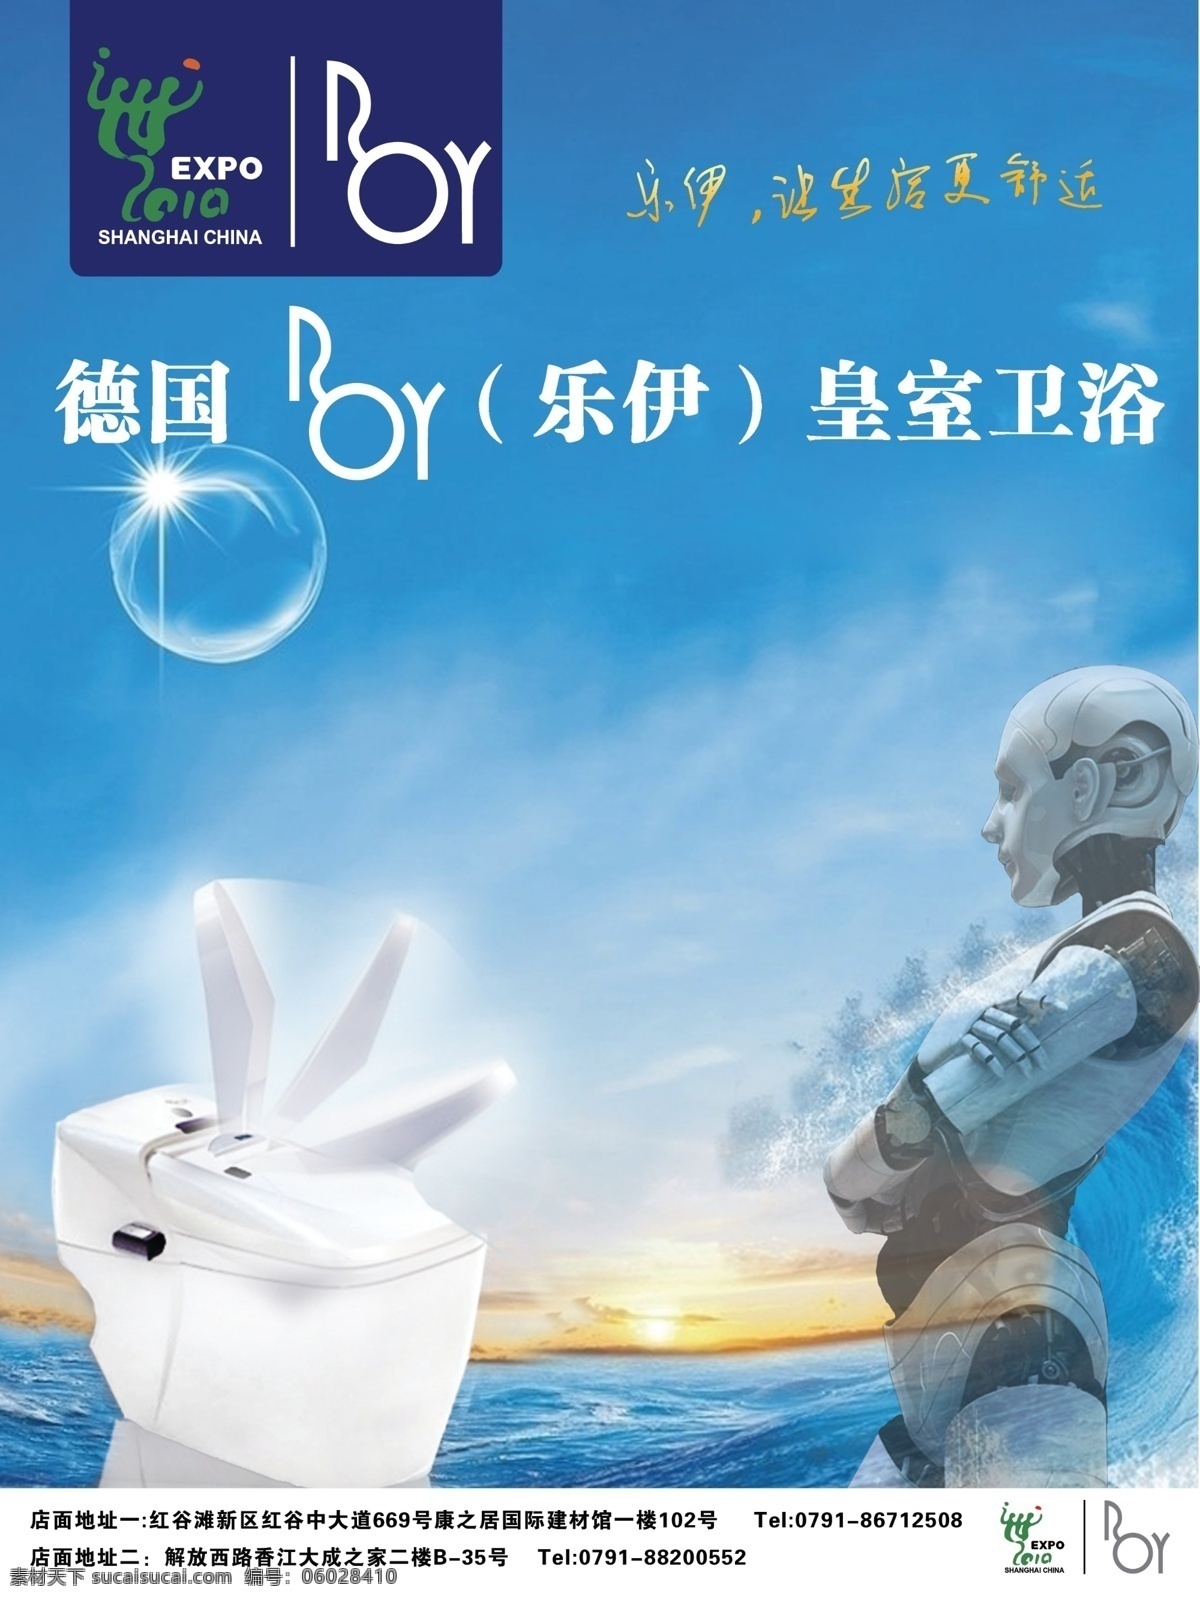 乐 伊 卫浴 杂志 海报 广告 广告设计模板 机器人 源文件 乐伊 其他海报设计